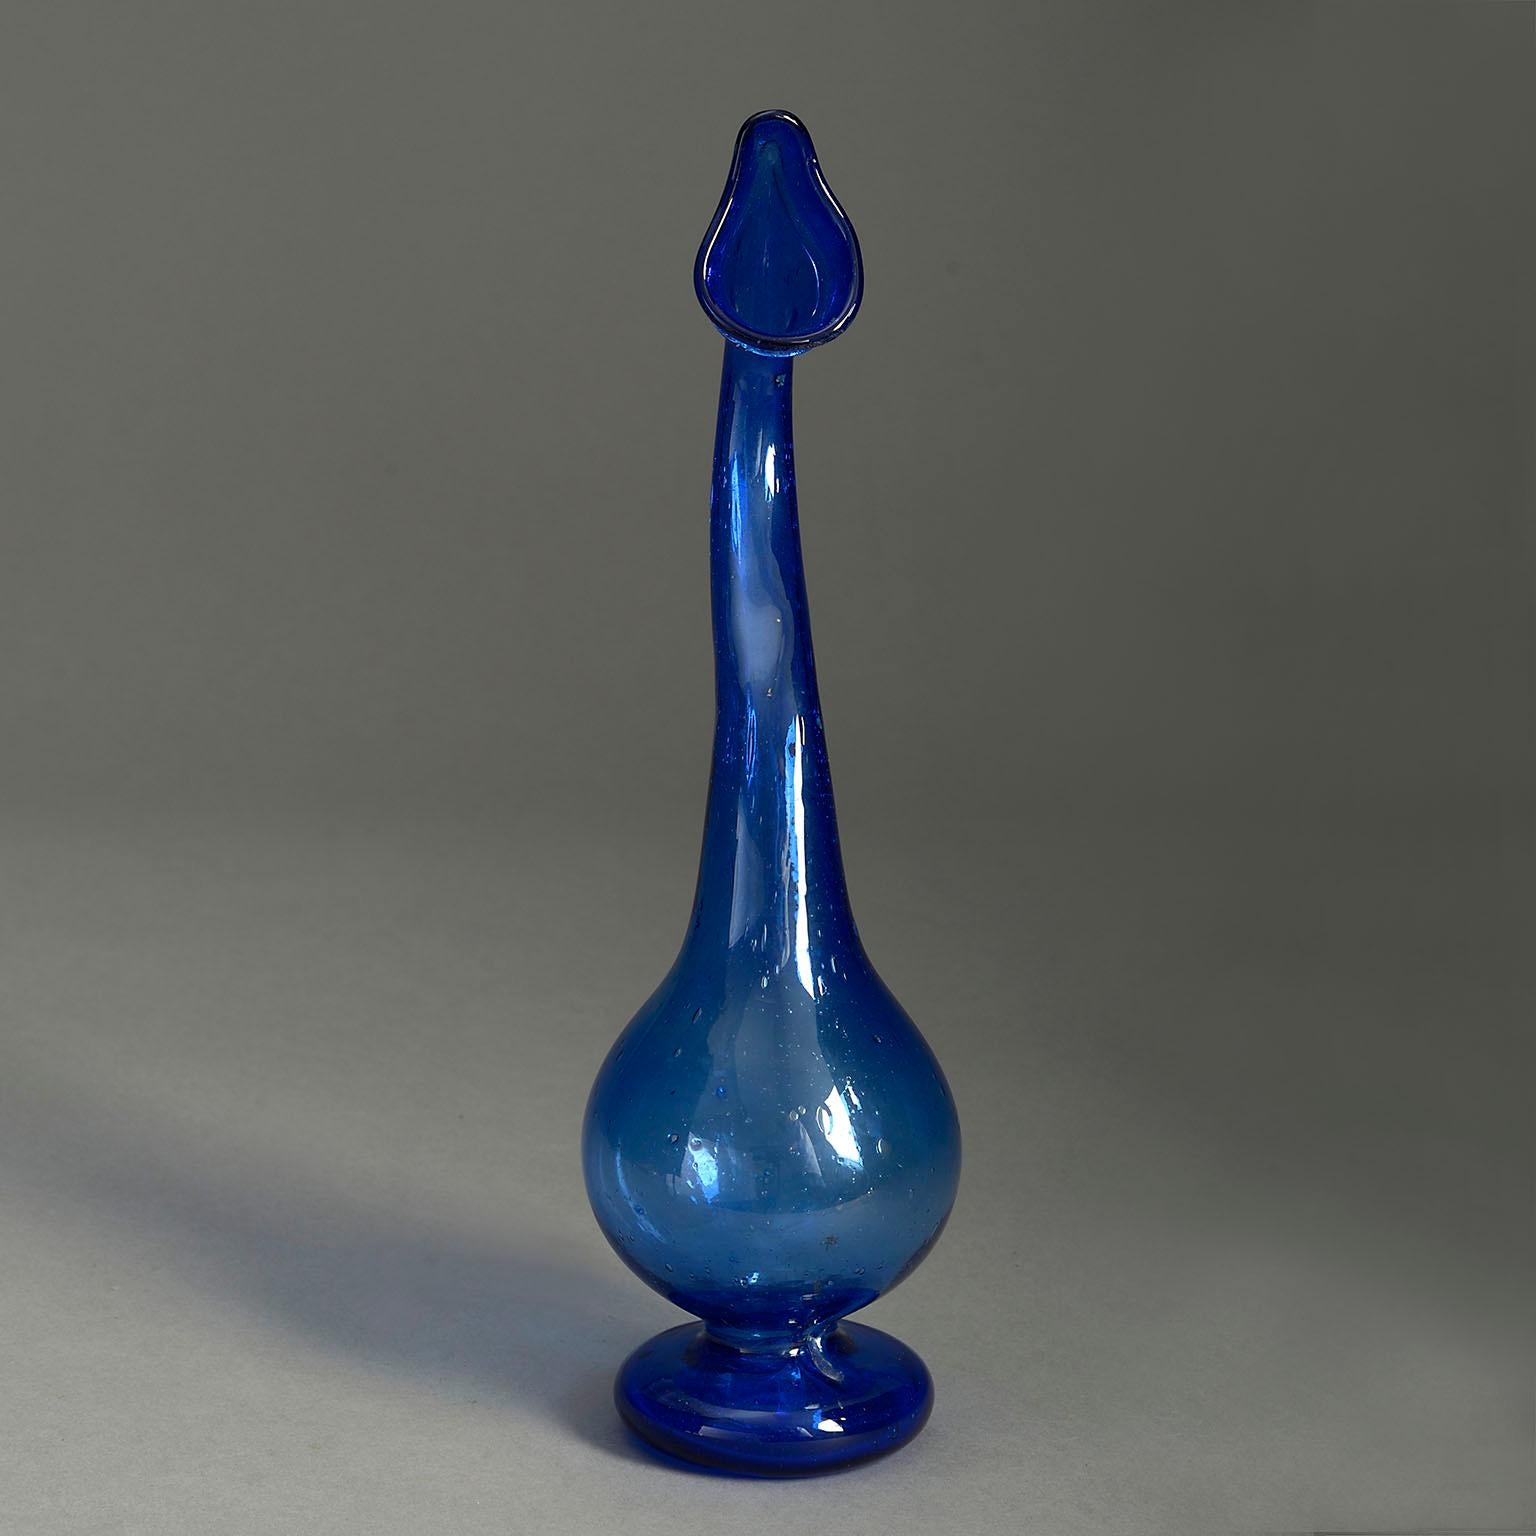 Eine blaue Glasvase aus dem frühen 20. Jahrhundert in organischer Form, mit geformtem Hals über einem bauchigen Sockel mit rundem Fuß.

